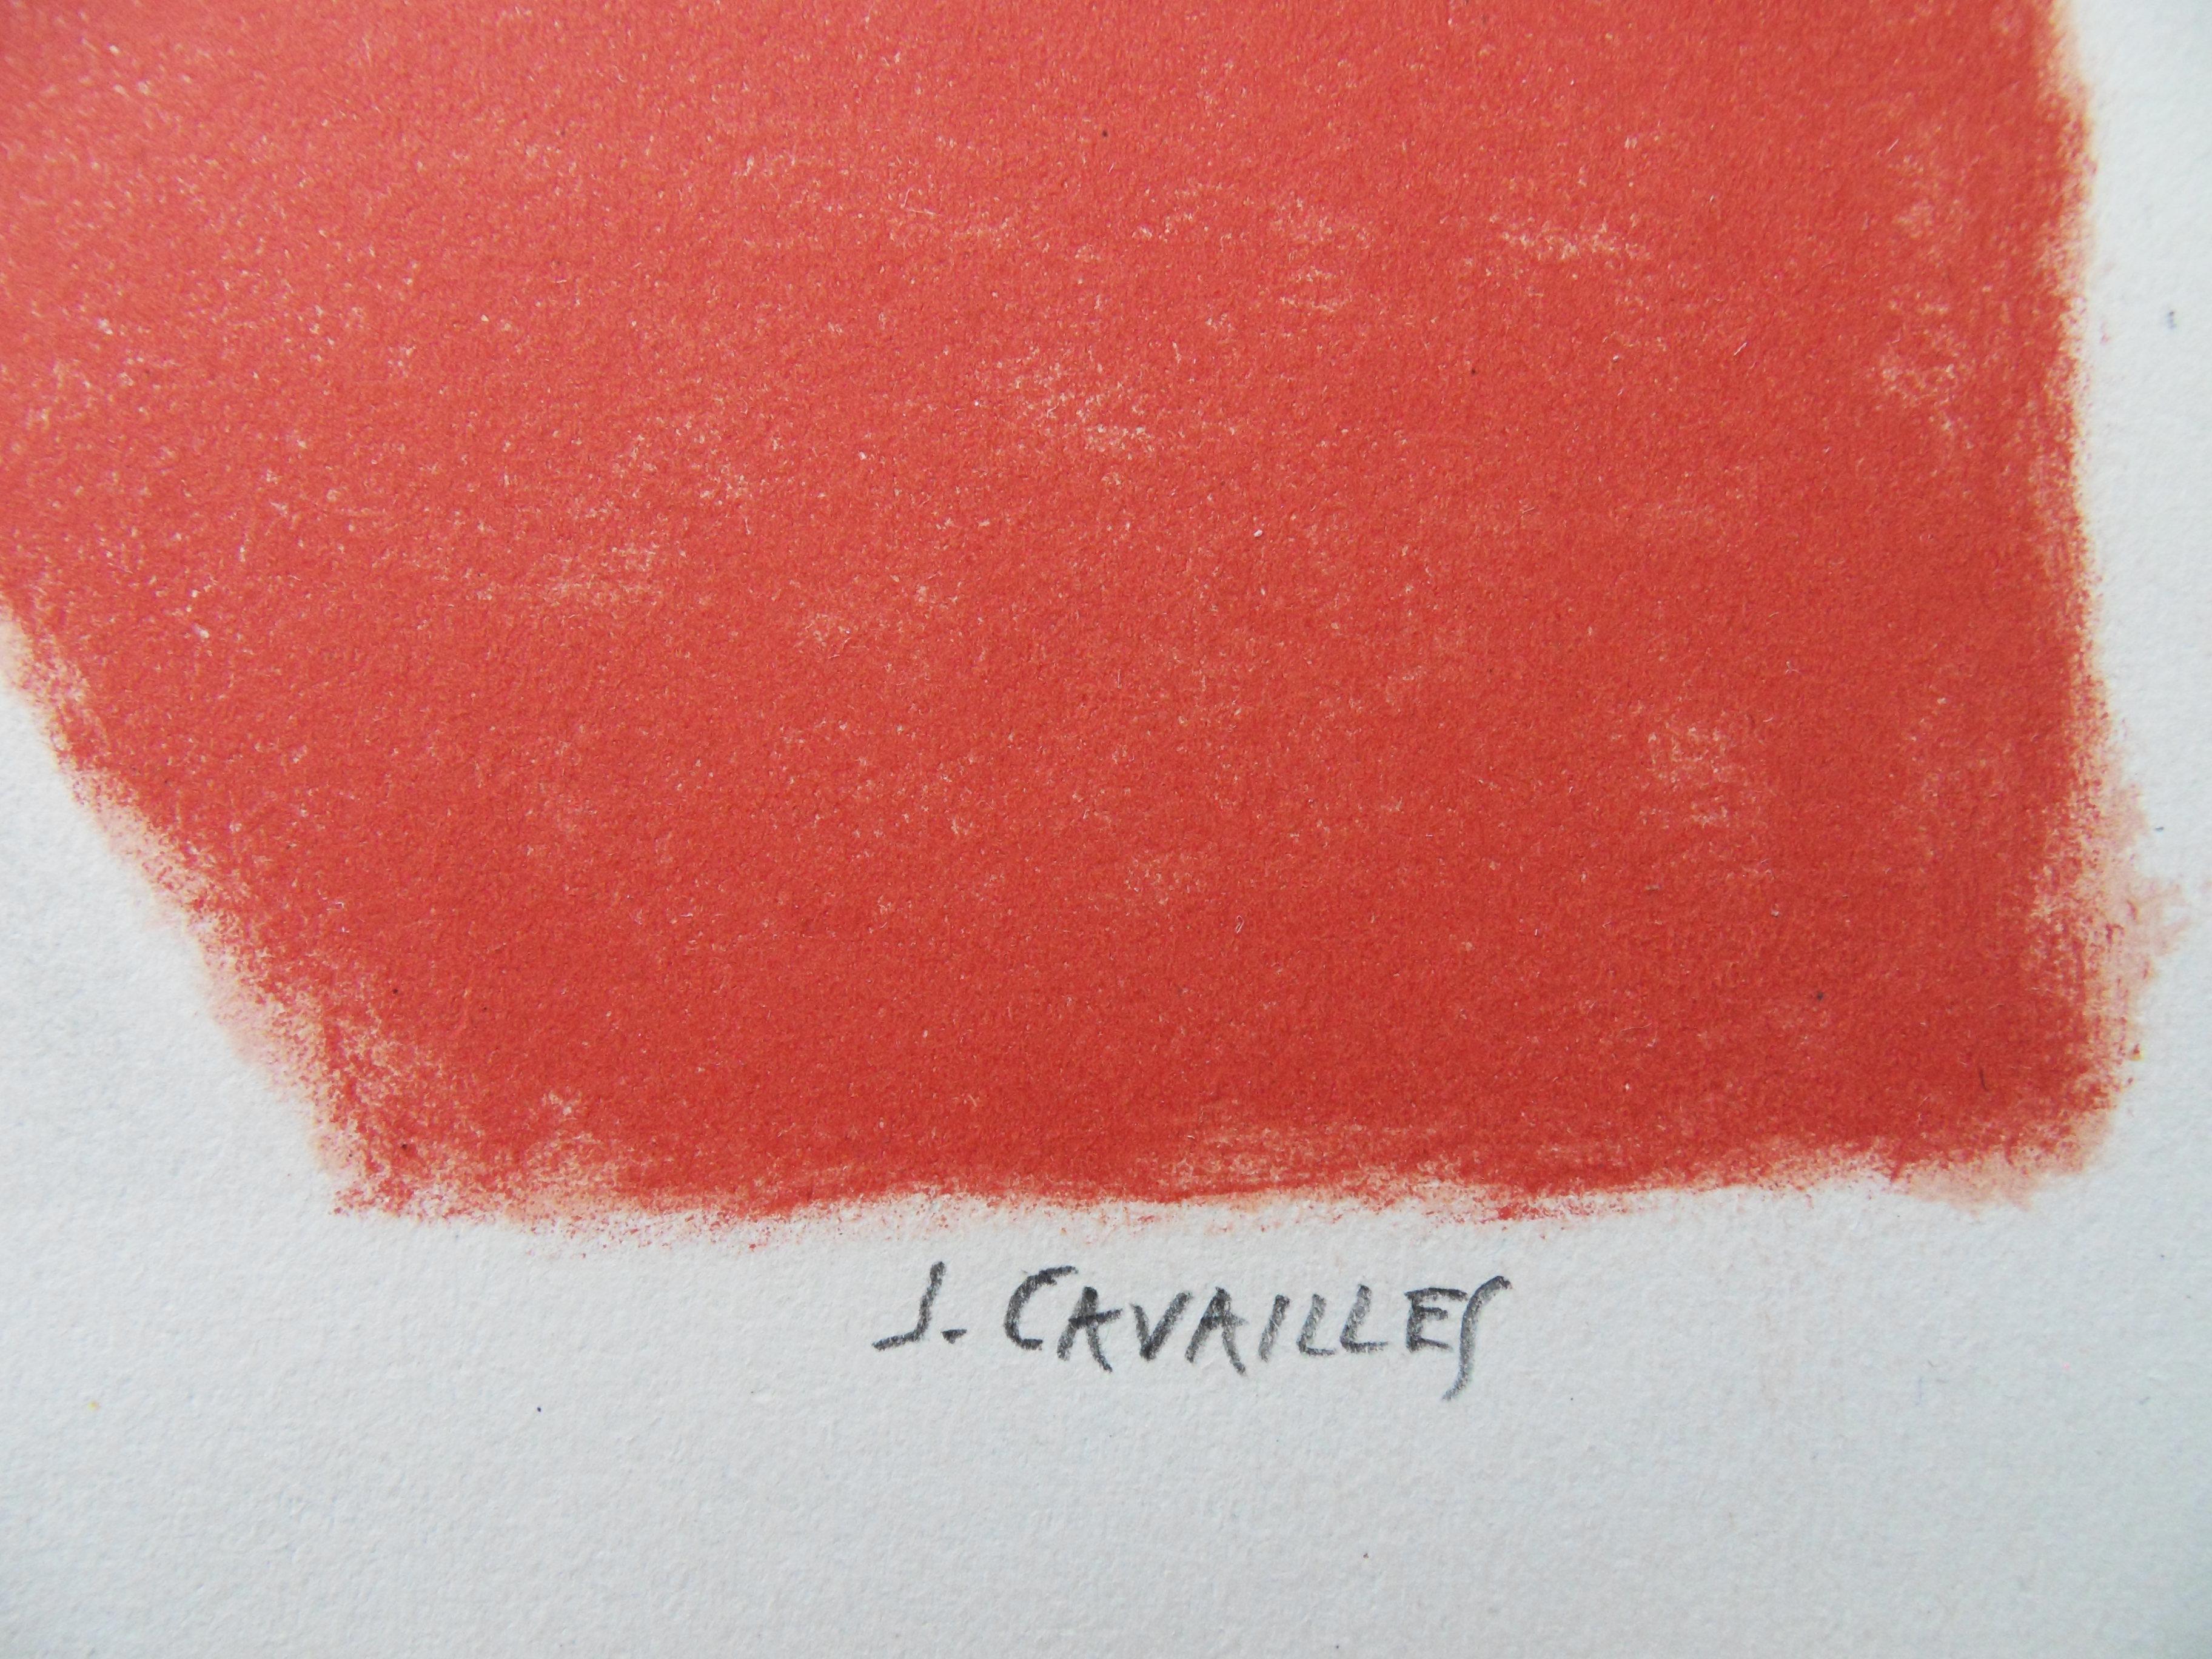 Jules CAVAILLES
Fruits et fleurs sur fond rouge

Lithographie originale
Signé à la main au crayon
EA justifié (épreuve d'artiste)
Sur vélin d'Arches 33 x 50 cm (c. 13 x 20 in)

Excellent état